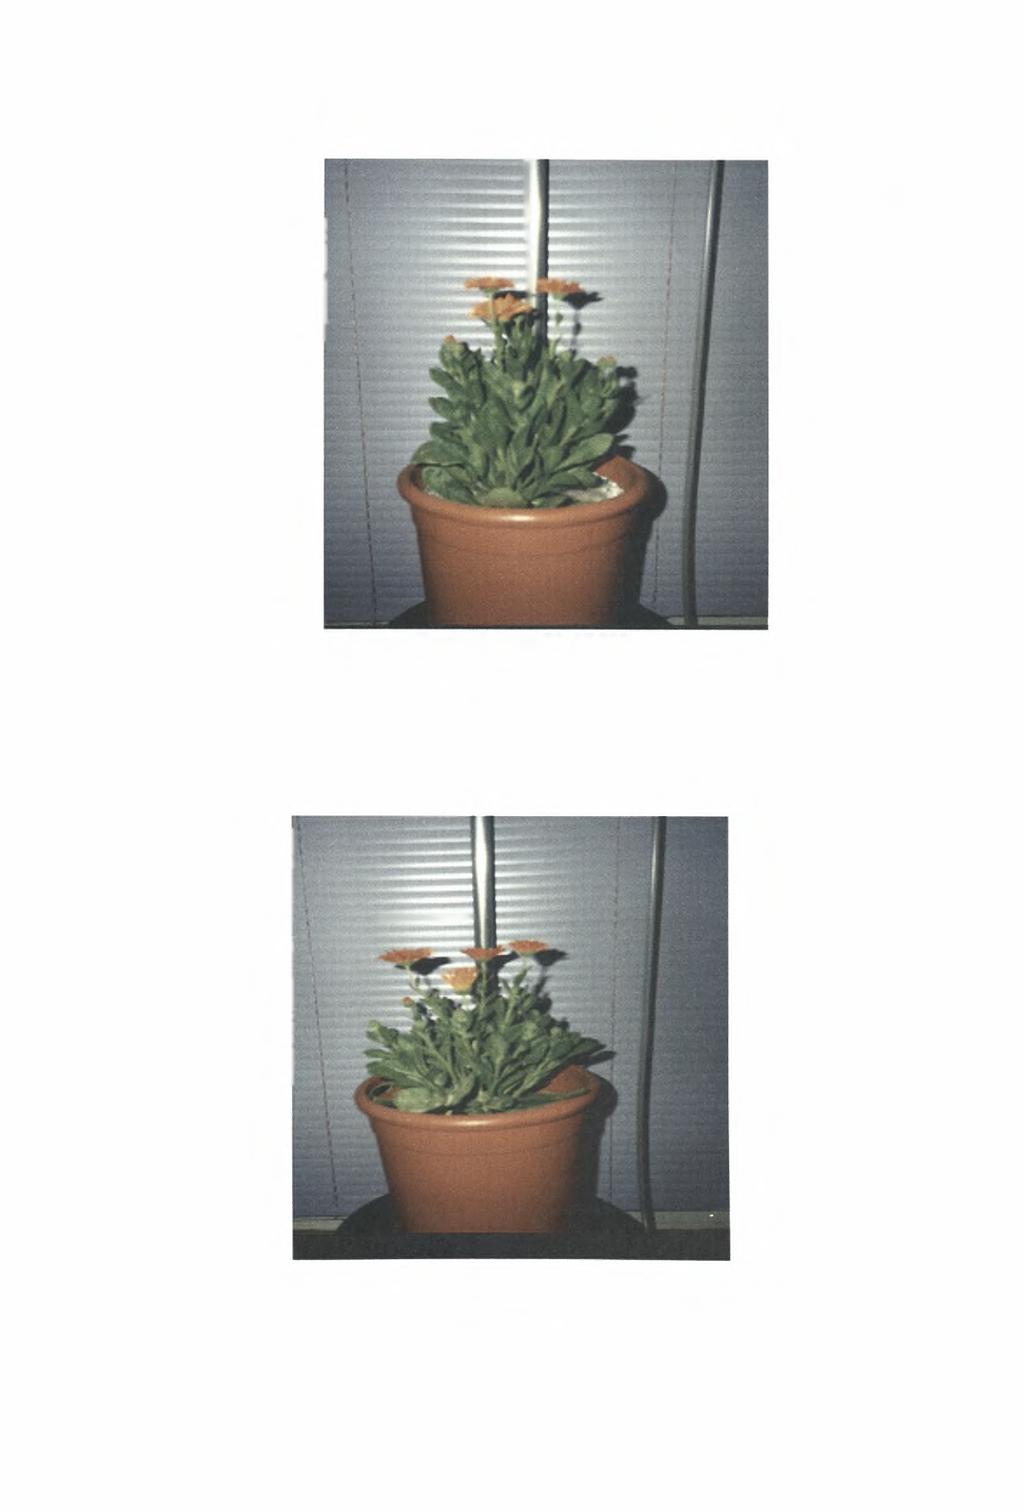 Εικόνα 21: Το φυτό στη γλάστρα